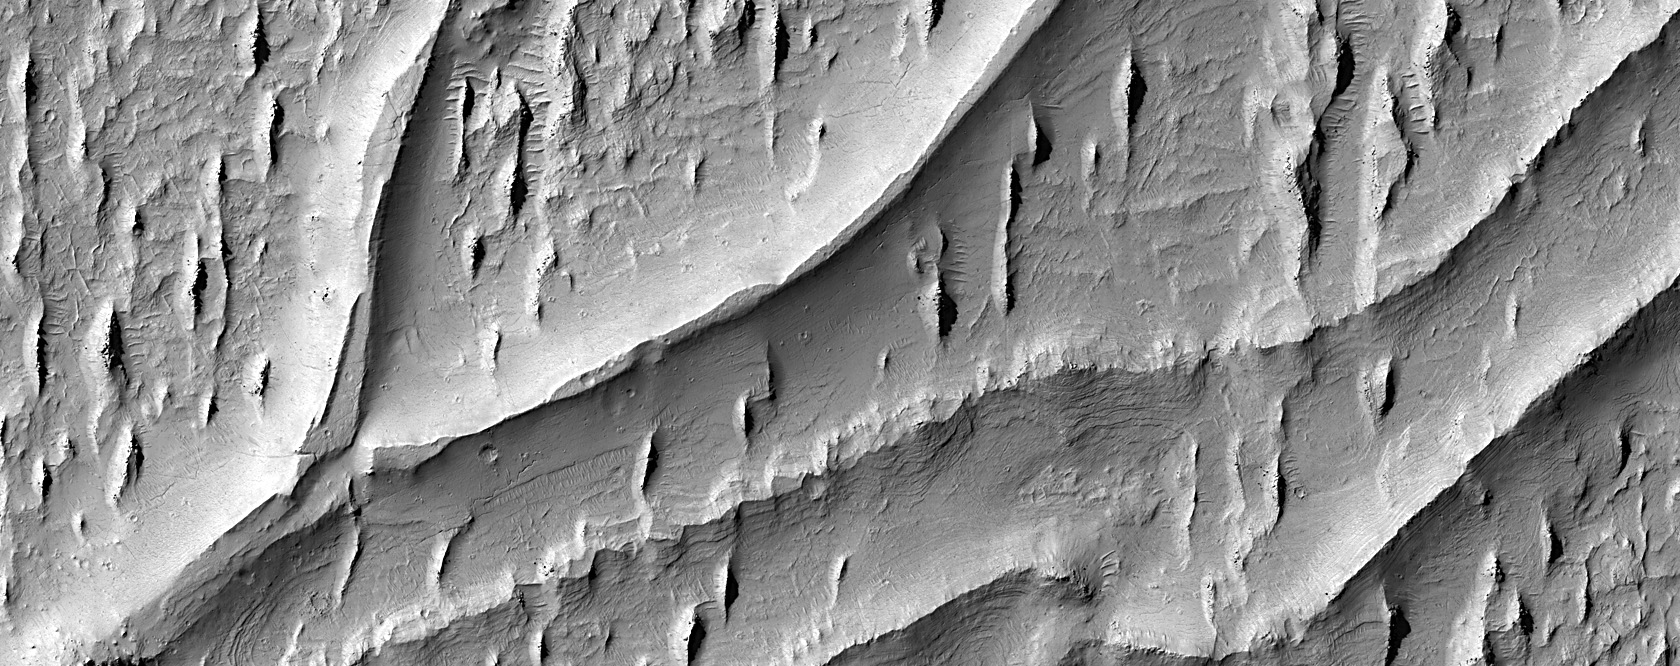 Curving Ridges in Aeolis Planum